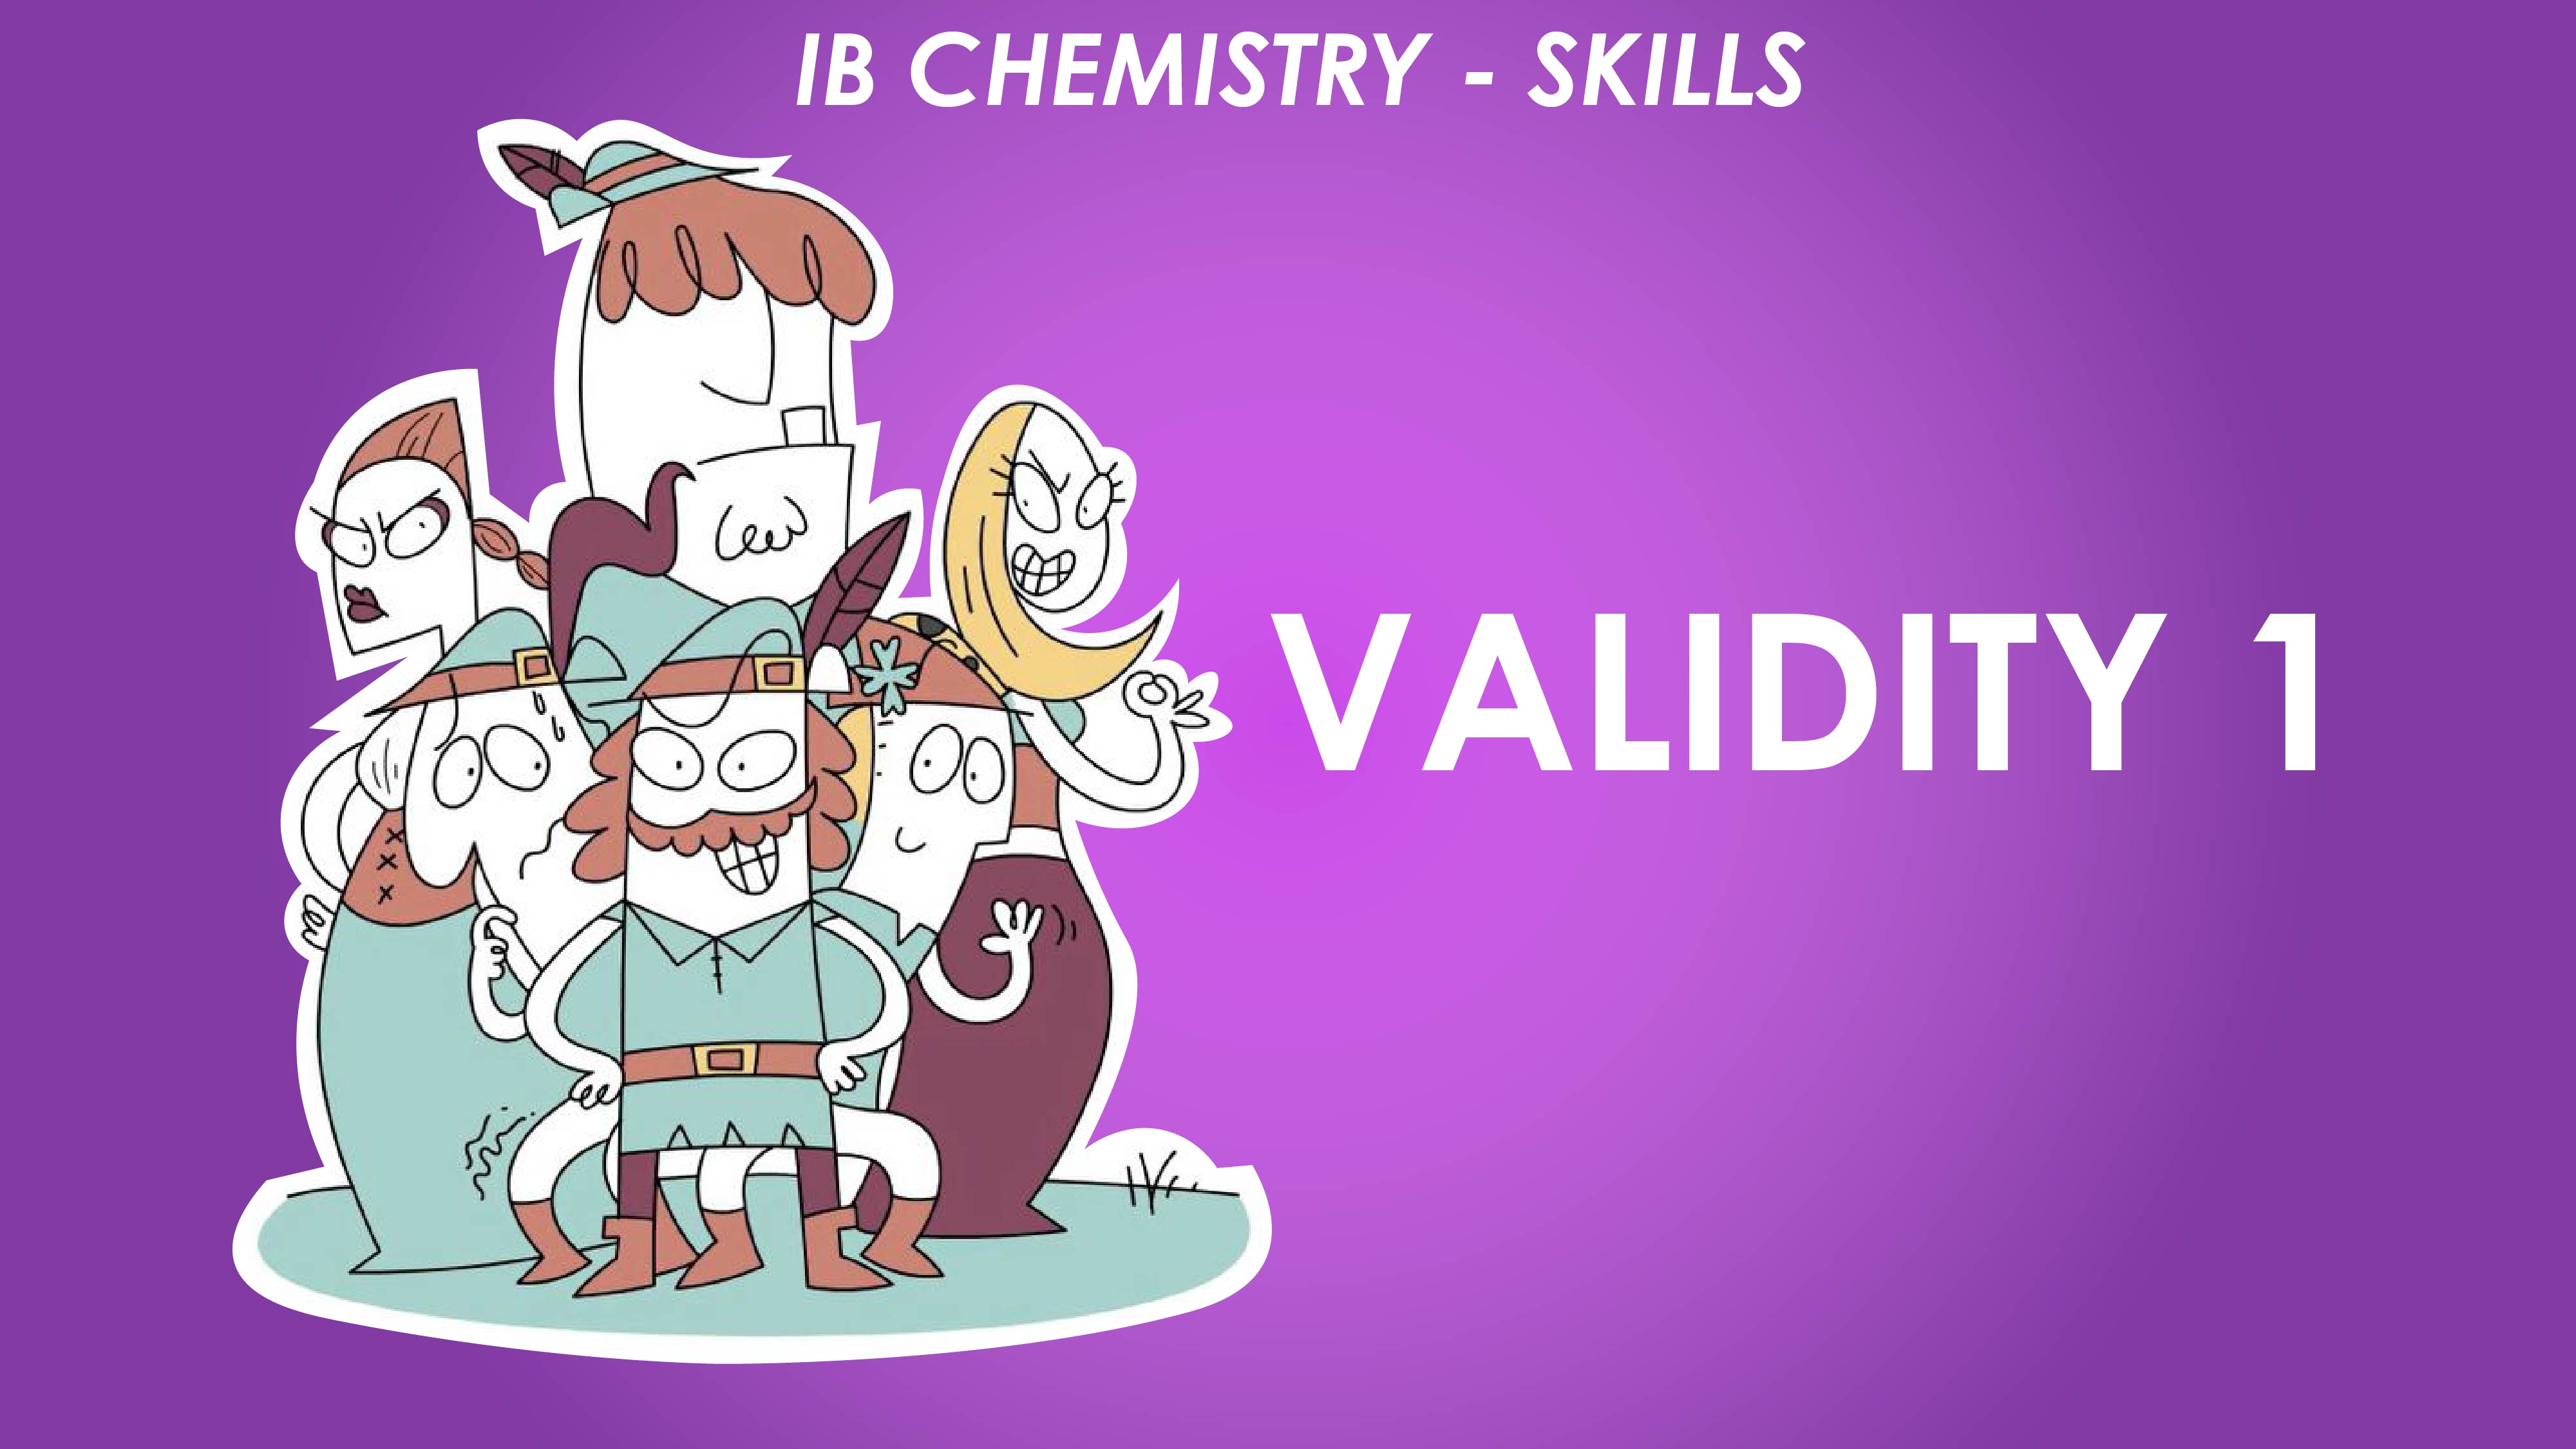 Validity 1 - IB Physics Skills